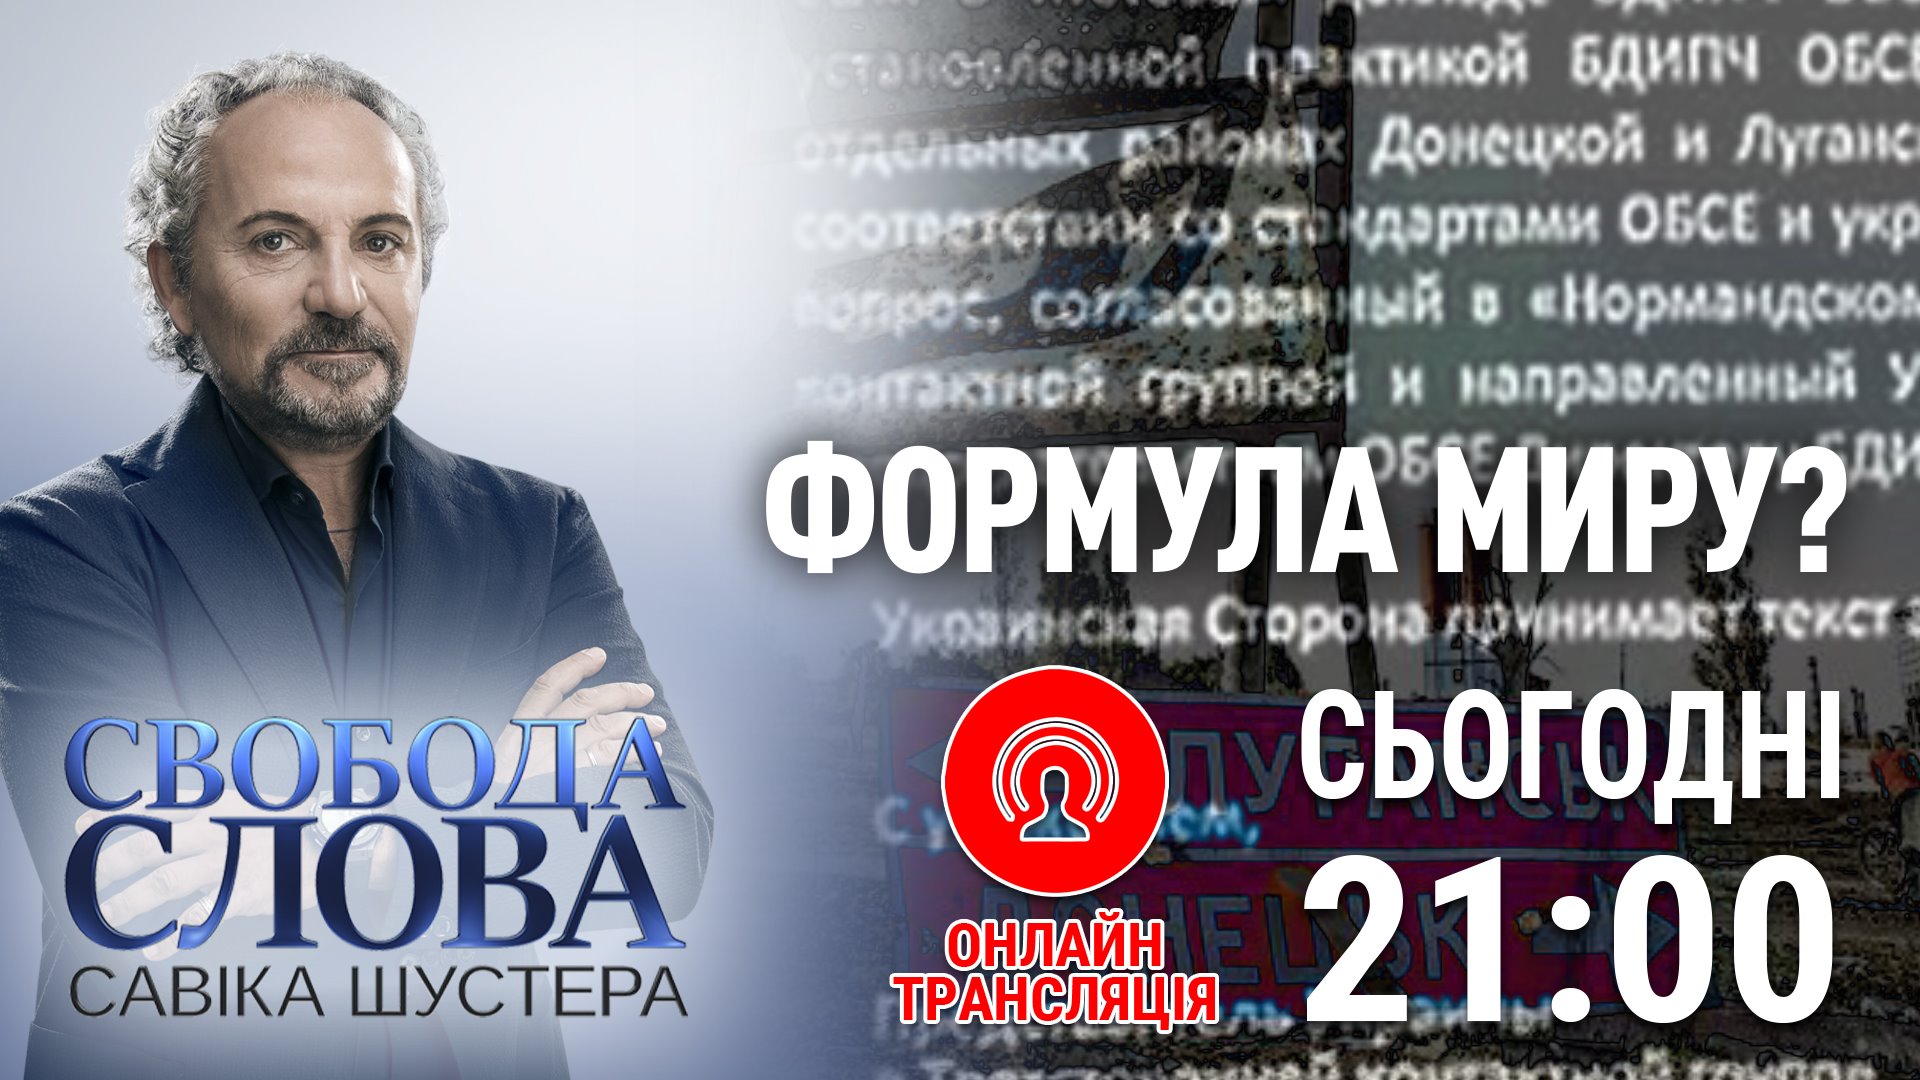 "Свобода слова Савика Шустера" выступление Порошенко онлайн: прямой эфир ток-шоу от 4 октября